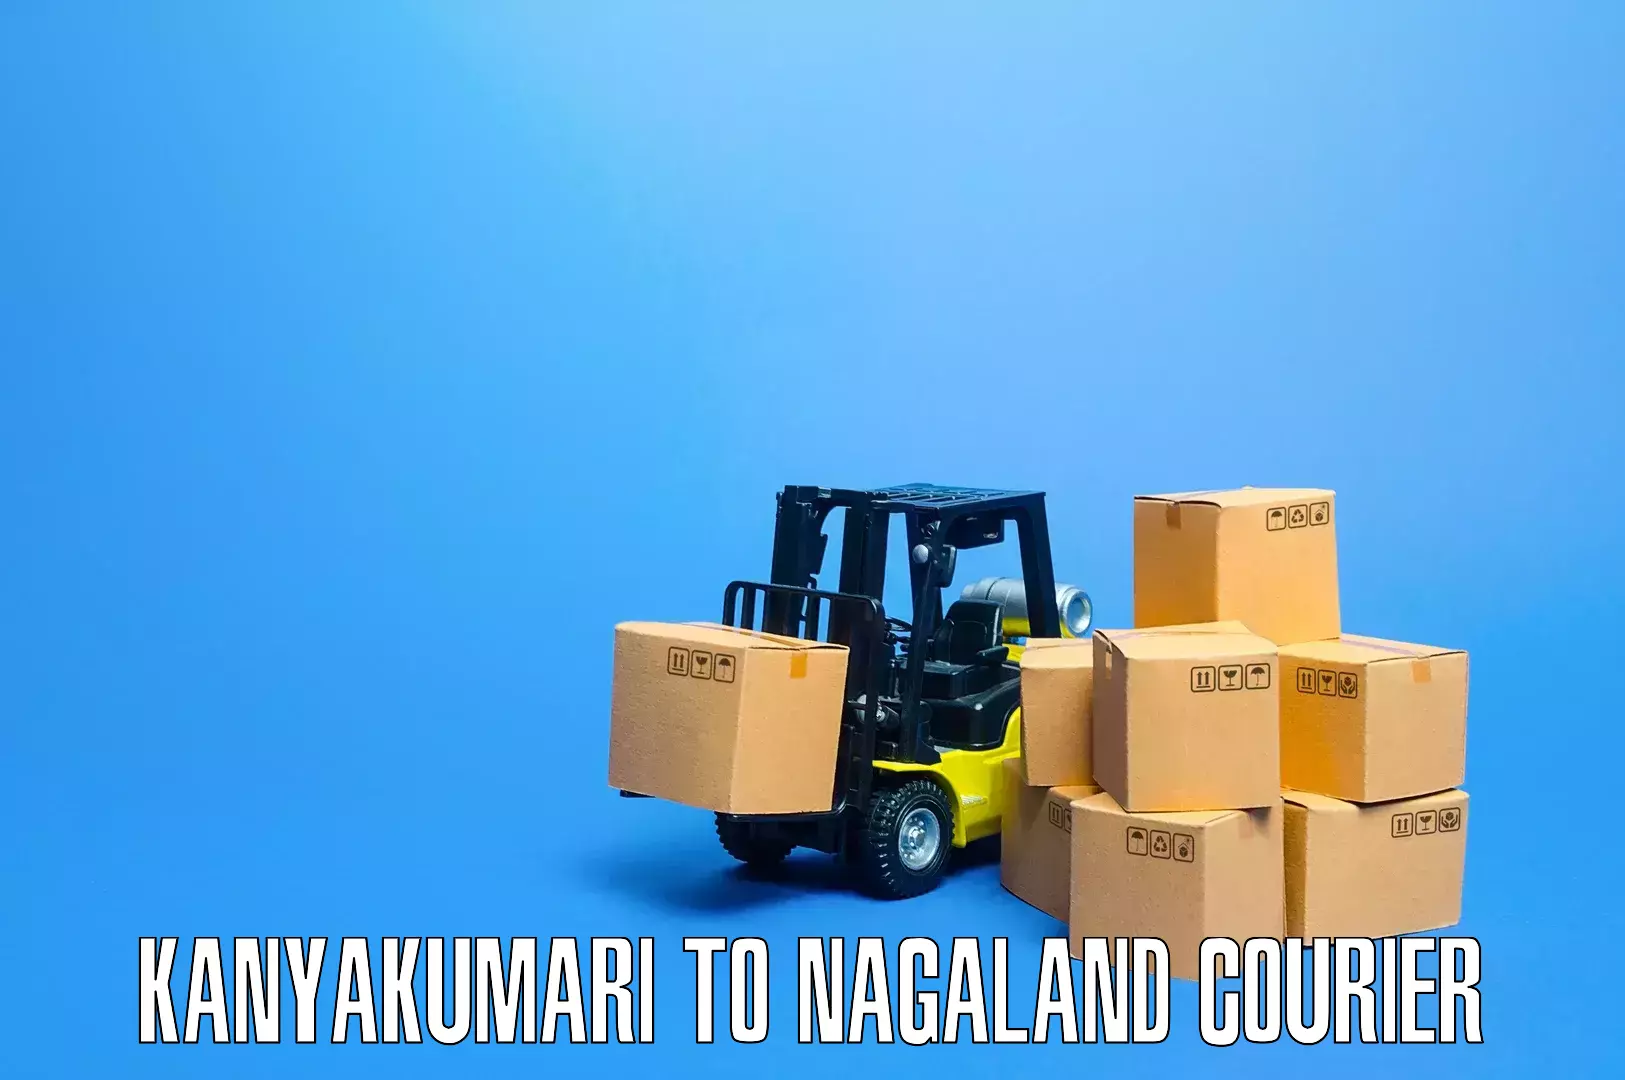 Cost-effective moving options Kanyakumari to NIT Nagaland